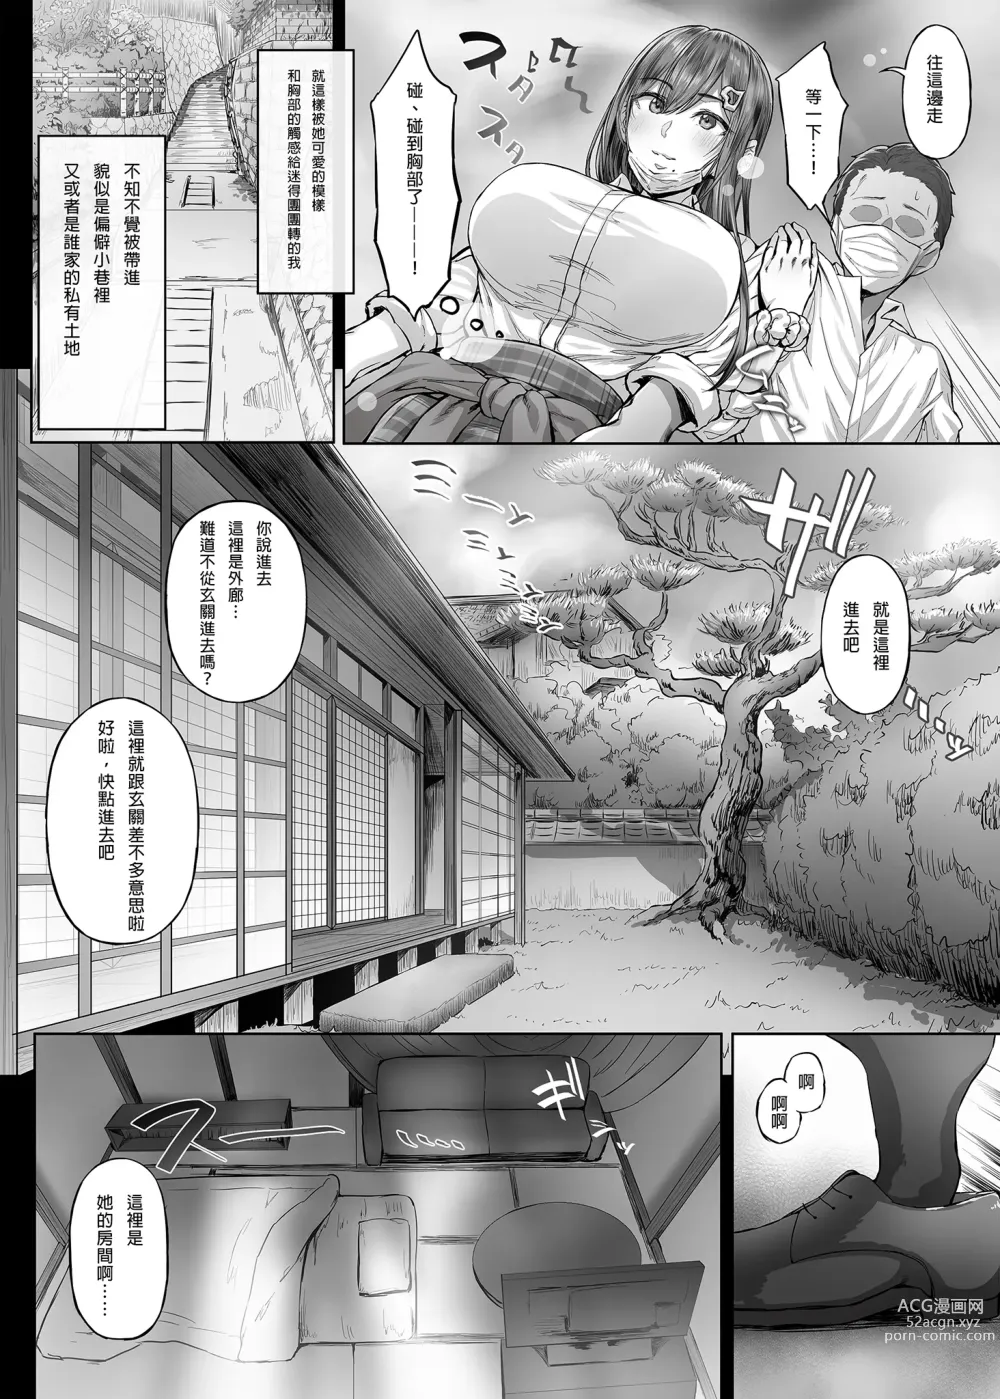 Page 8 of doujinshi Kajitsu C-ori01